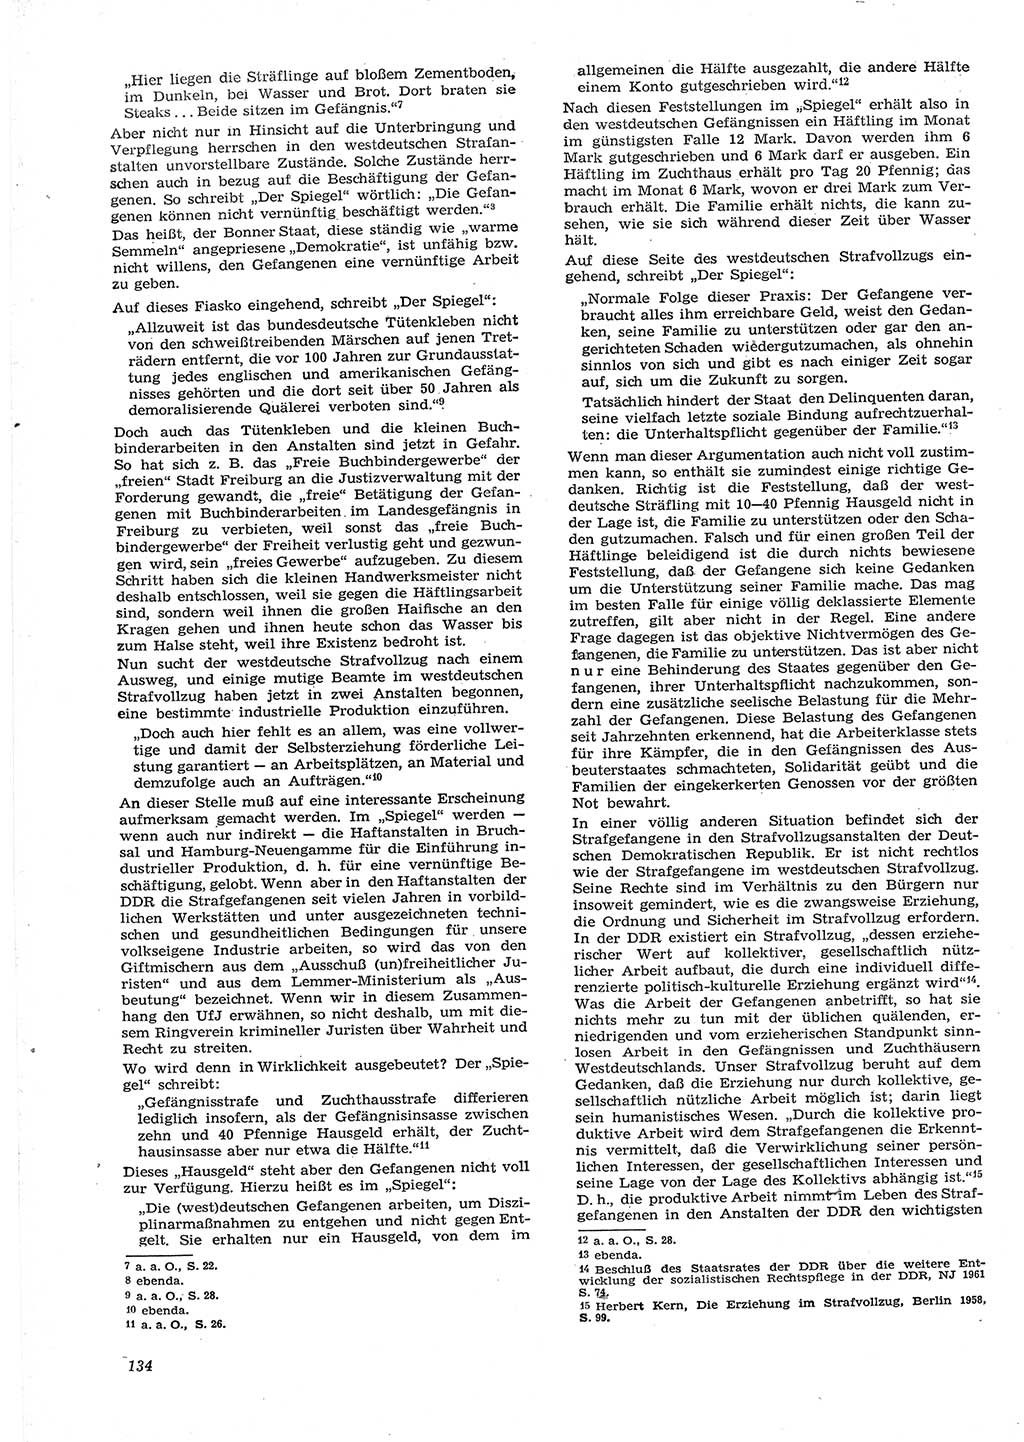 Neue Justiz (NJ), Zeitschrift für Recht und Rechtswissenschaft [Deutsche Demokratische Republik (DDR)], 15. Jahrgang 1961, Seite 134 (NJ DDR 1961, S. 134)